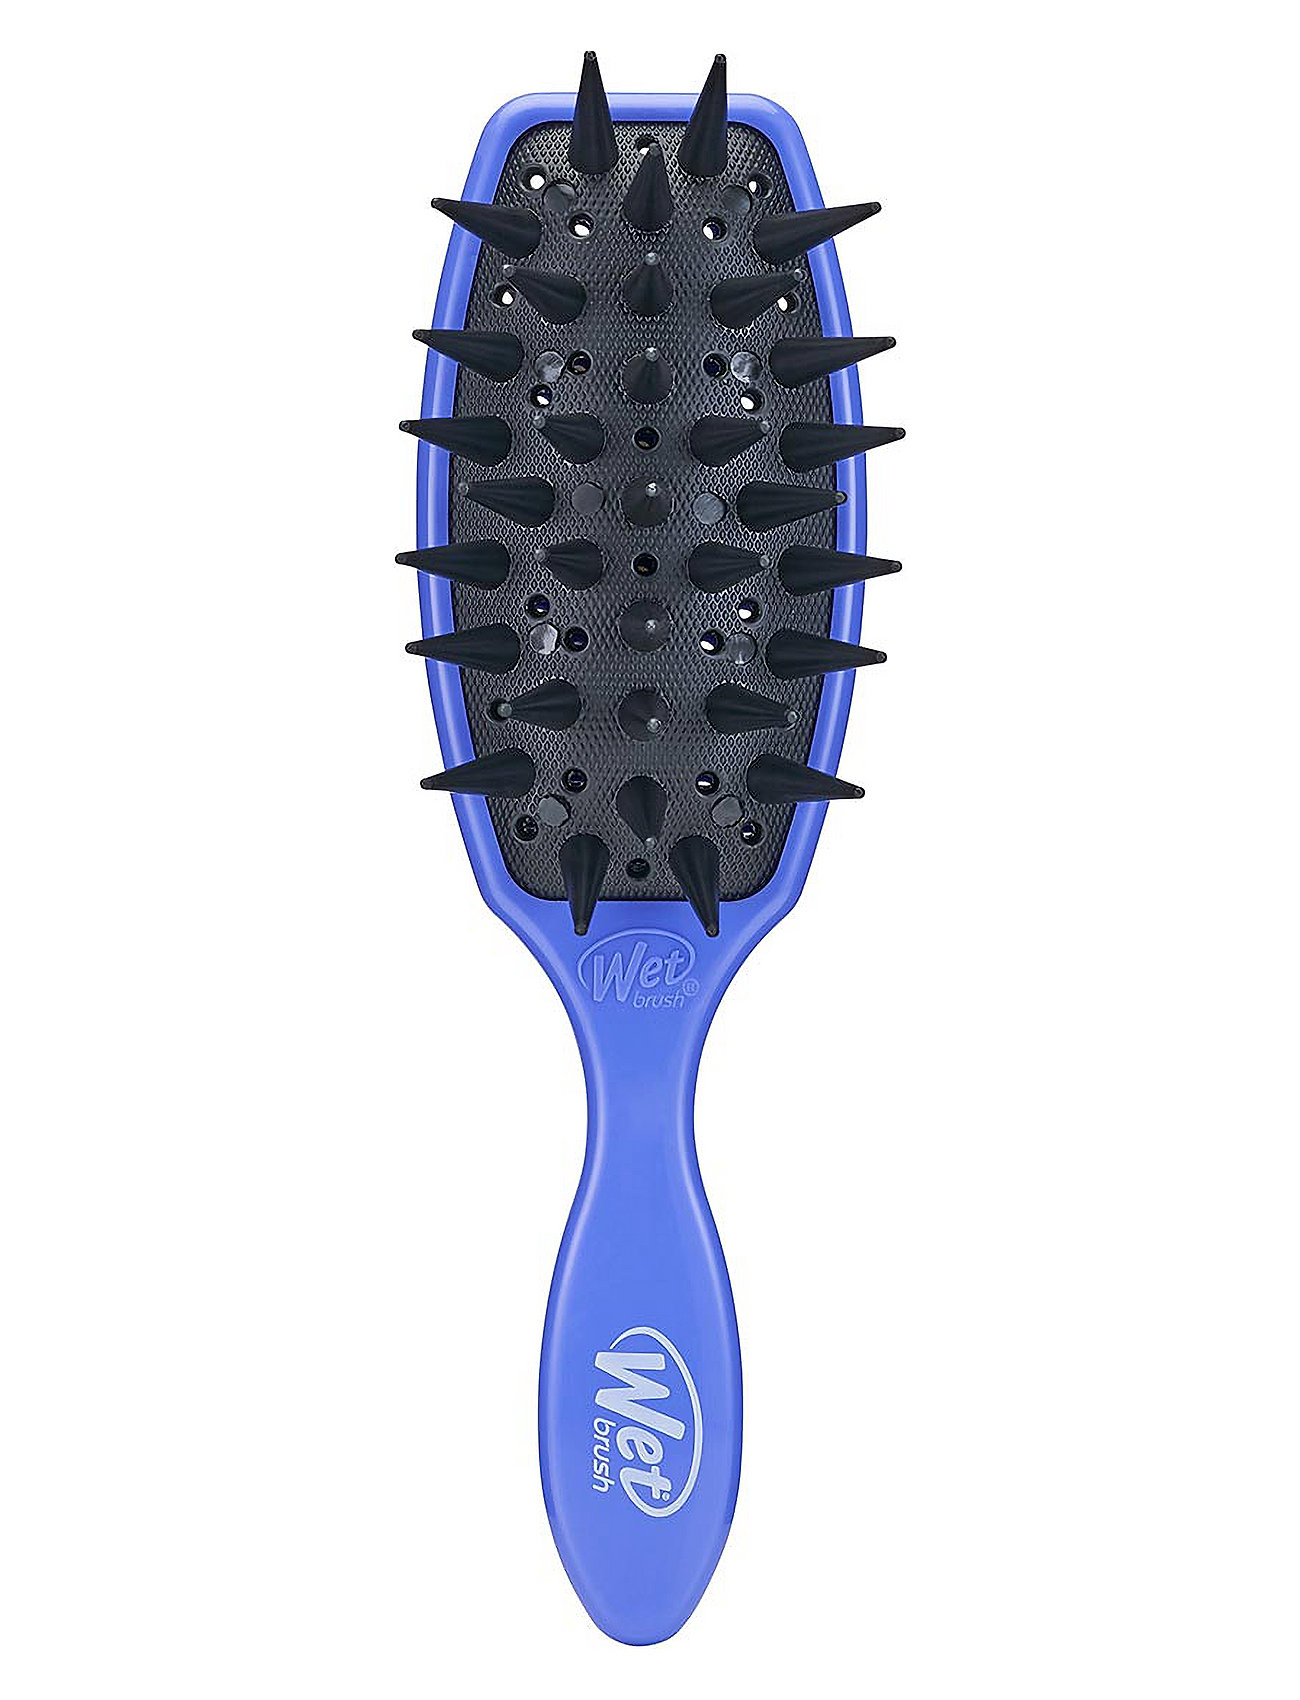 Retail Original Treatment Brush Beauty Women Hair Hair Brushes & Combs Paddle Brush Purple Wetbrush